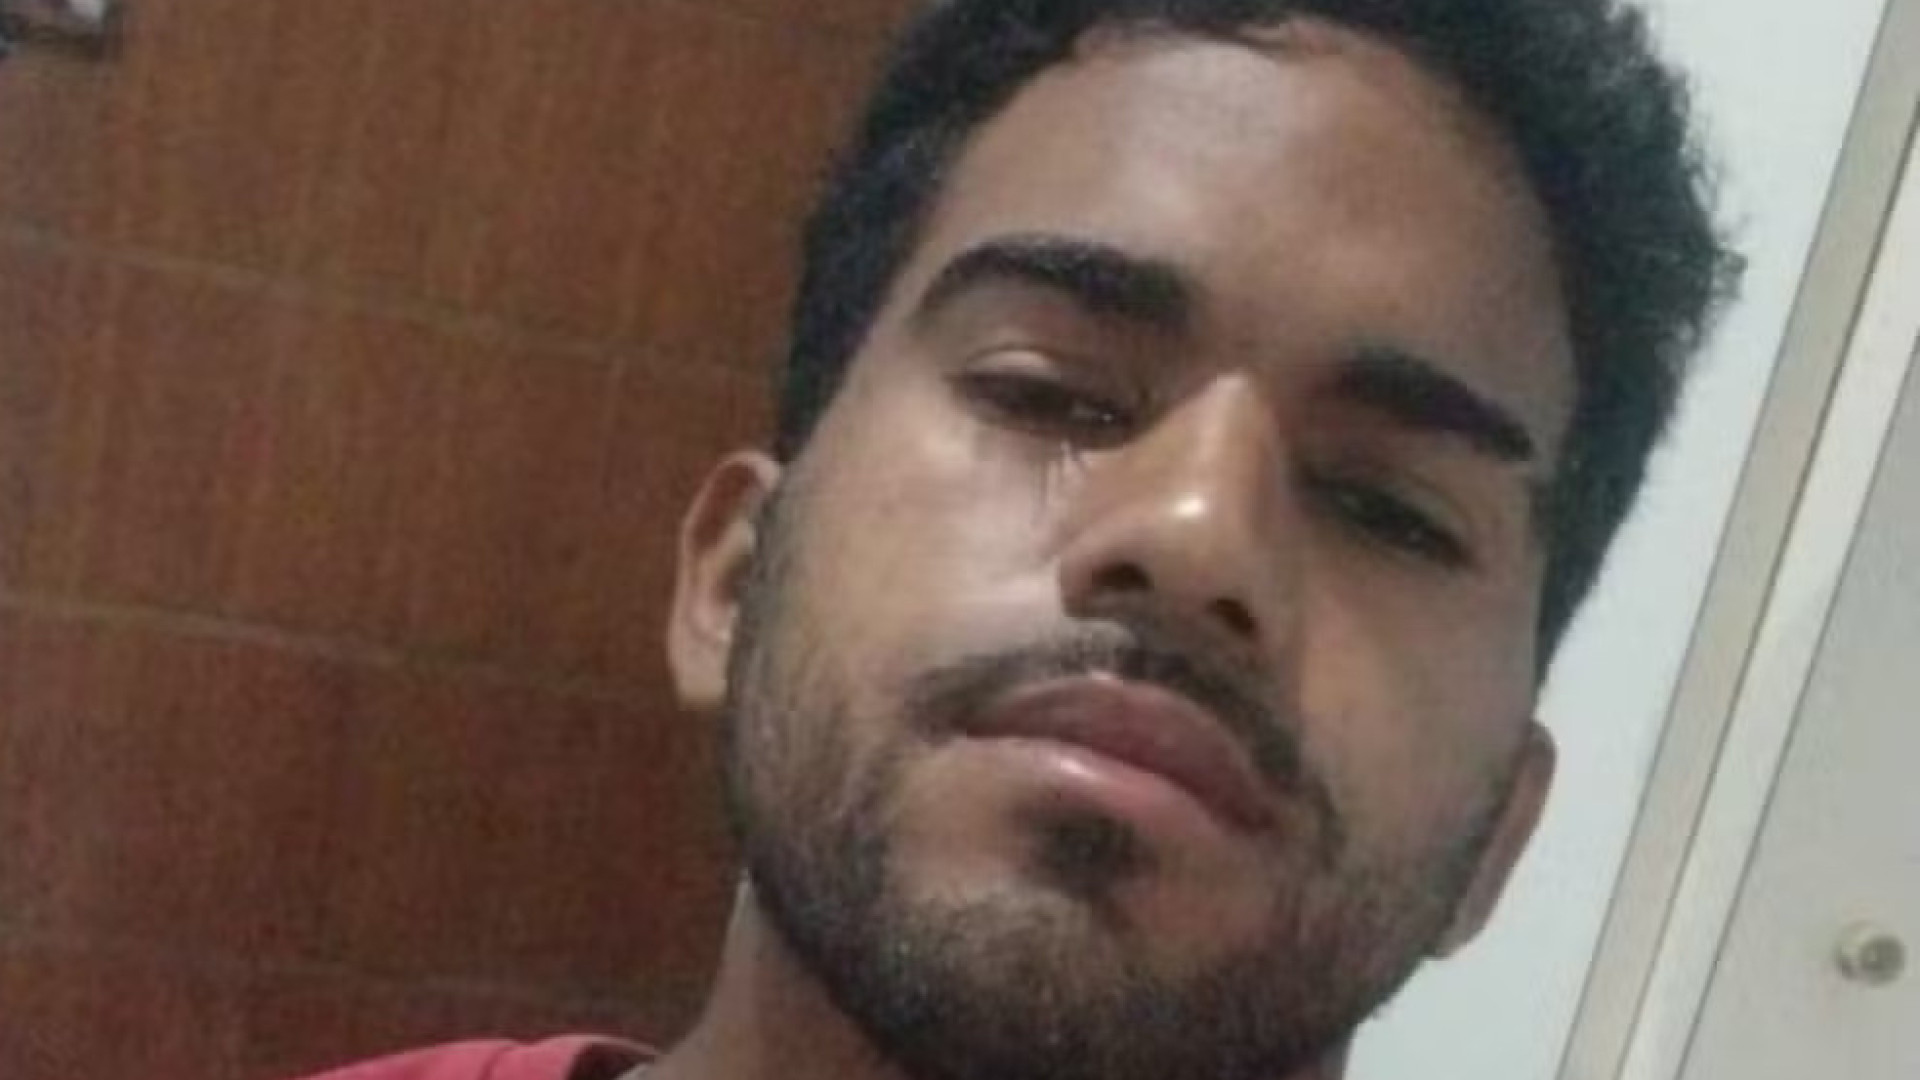 Espancado até morrer, pedreiro foi vítima de fake news em Suzano (SP), diz polícia